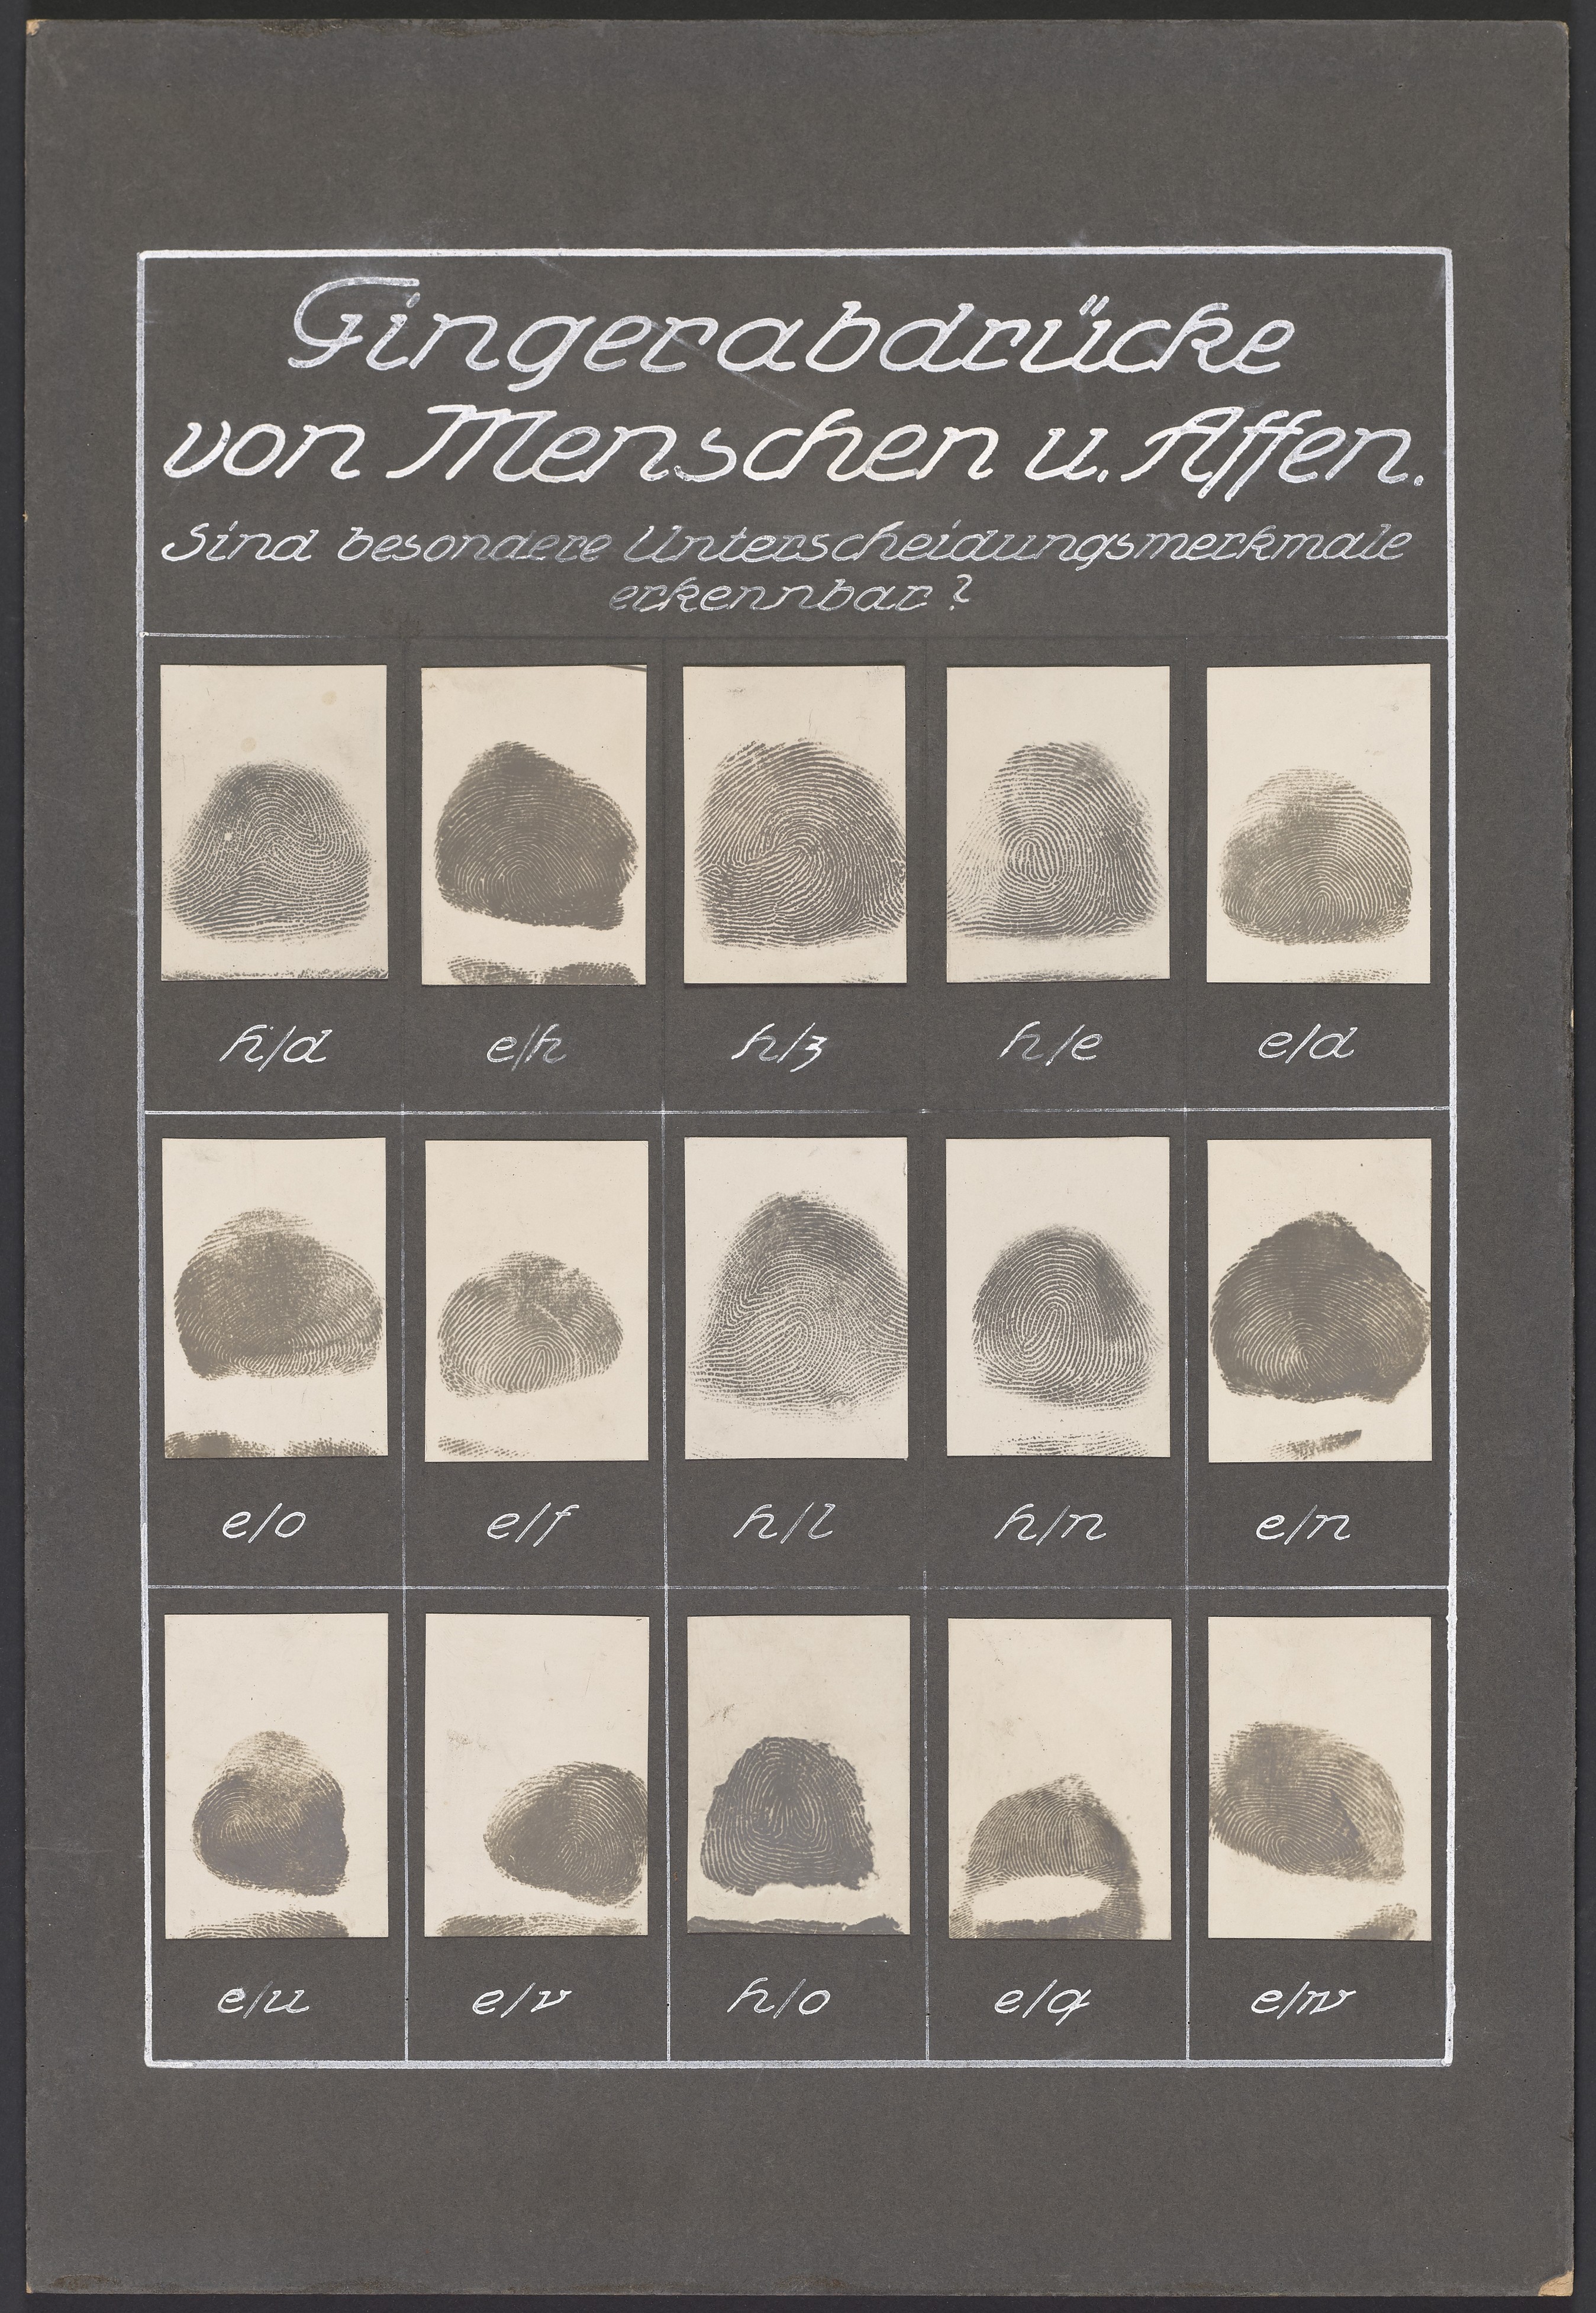 Lehrtafel "Fingerabdrücke von Menschen und Affen" (Polizeidirektion Dresden RR-F)